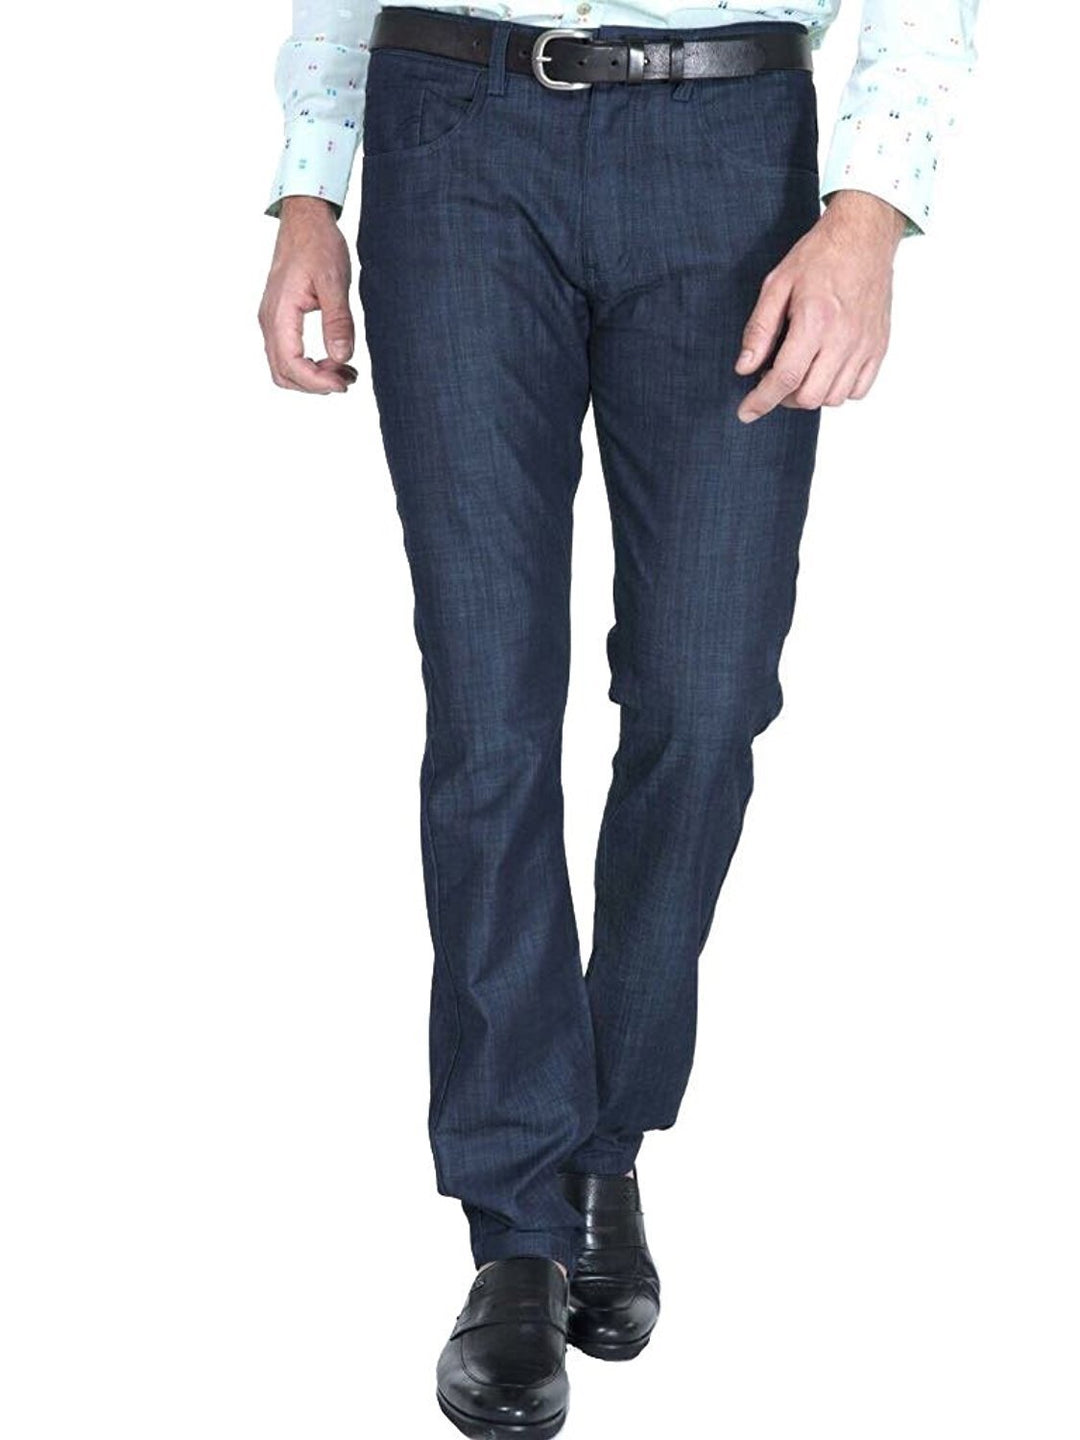 Adam Baker Men's Slim Fit Stretch Luxury Dress Pants - Colors